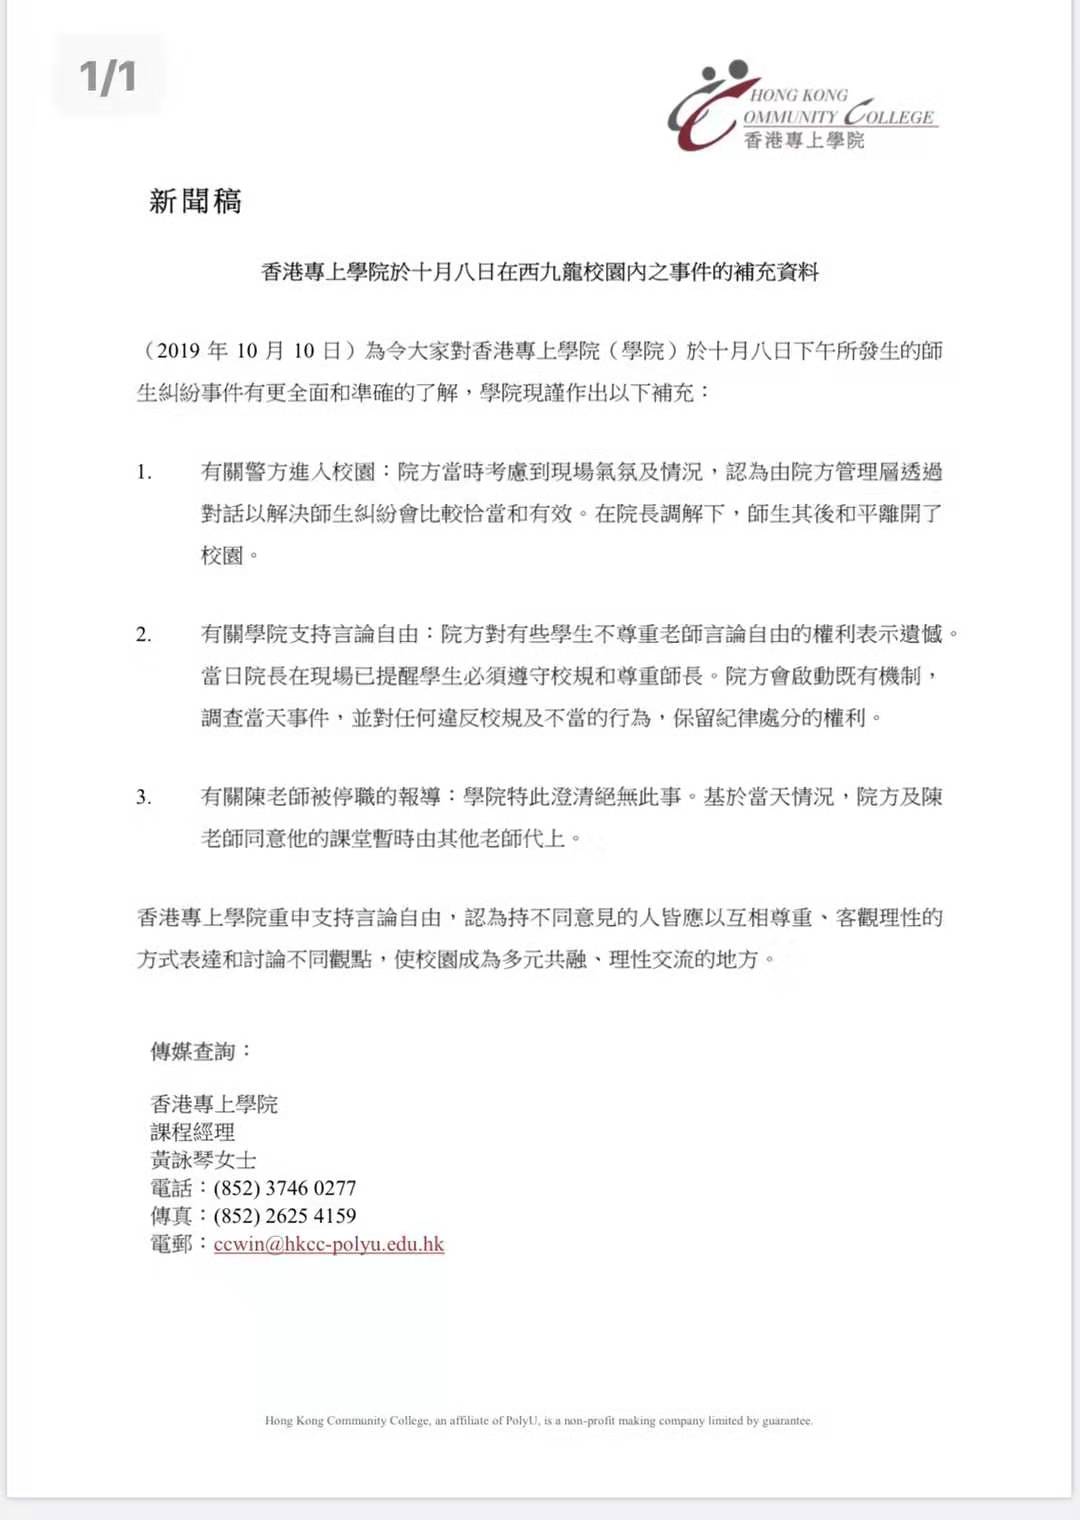 香港專上學院表示A將調查8日有學生包圍辱罵講師陳偉強事件]網頁截圖^